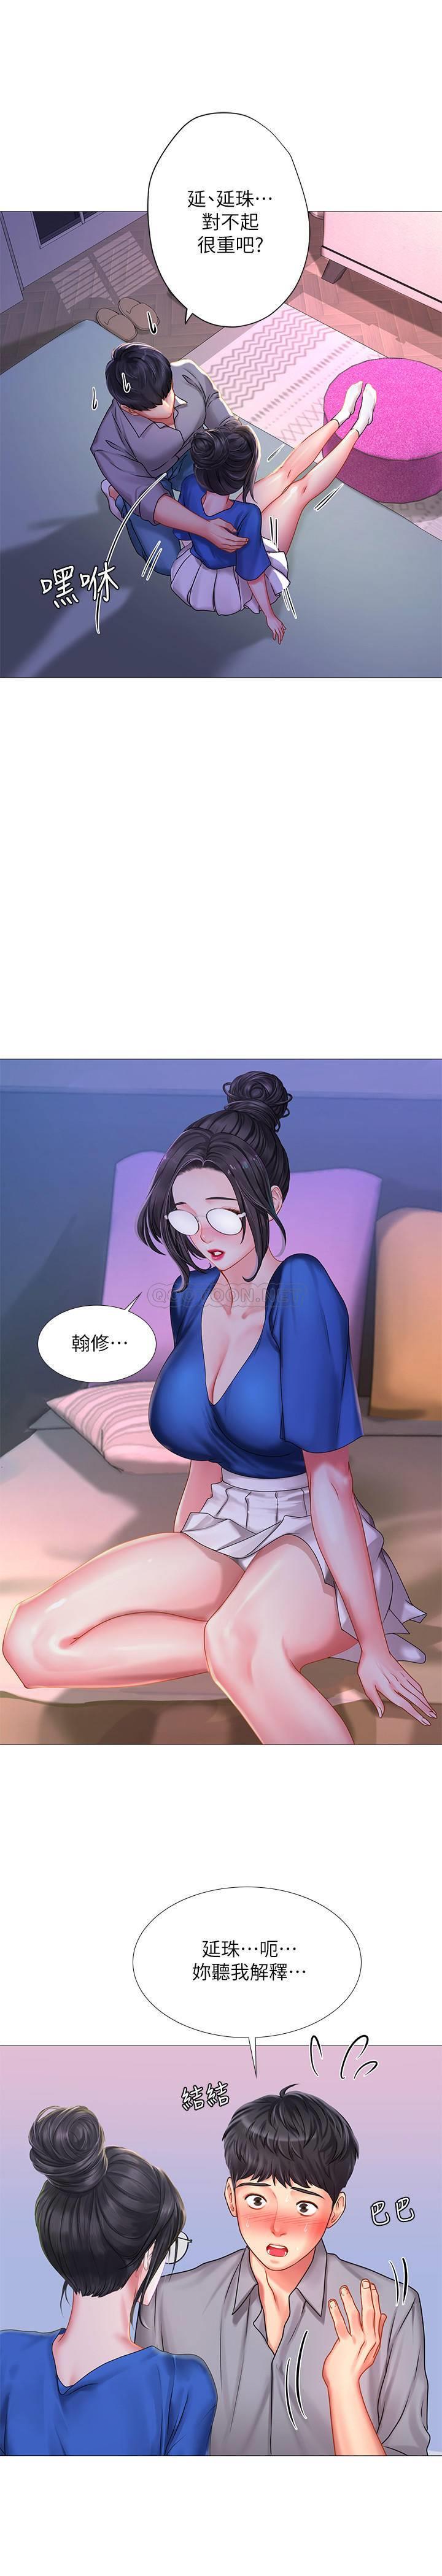 《享乐补习街》漫画 第39话 - 延珠的华丽变身